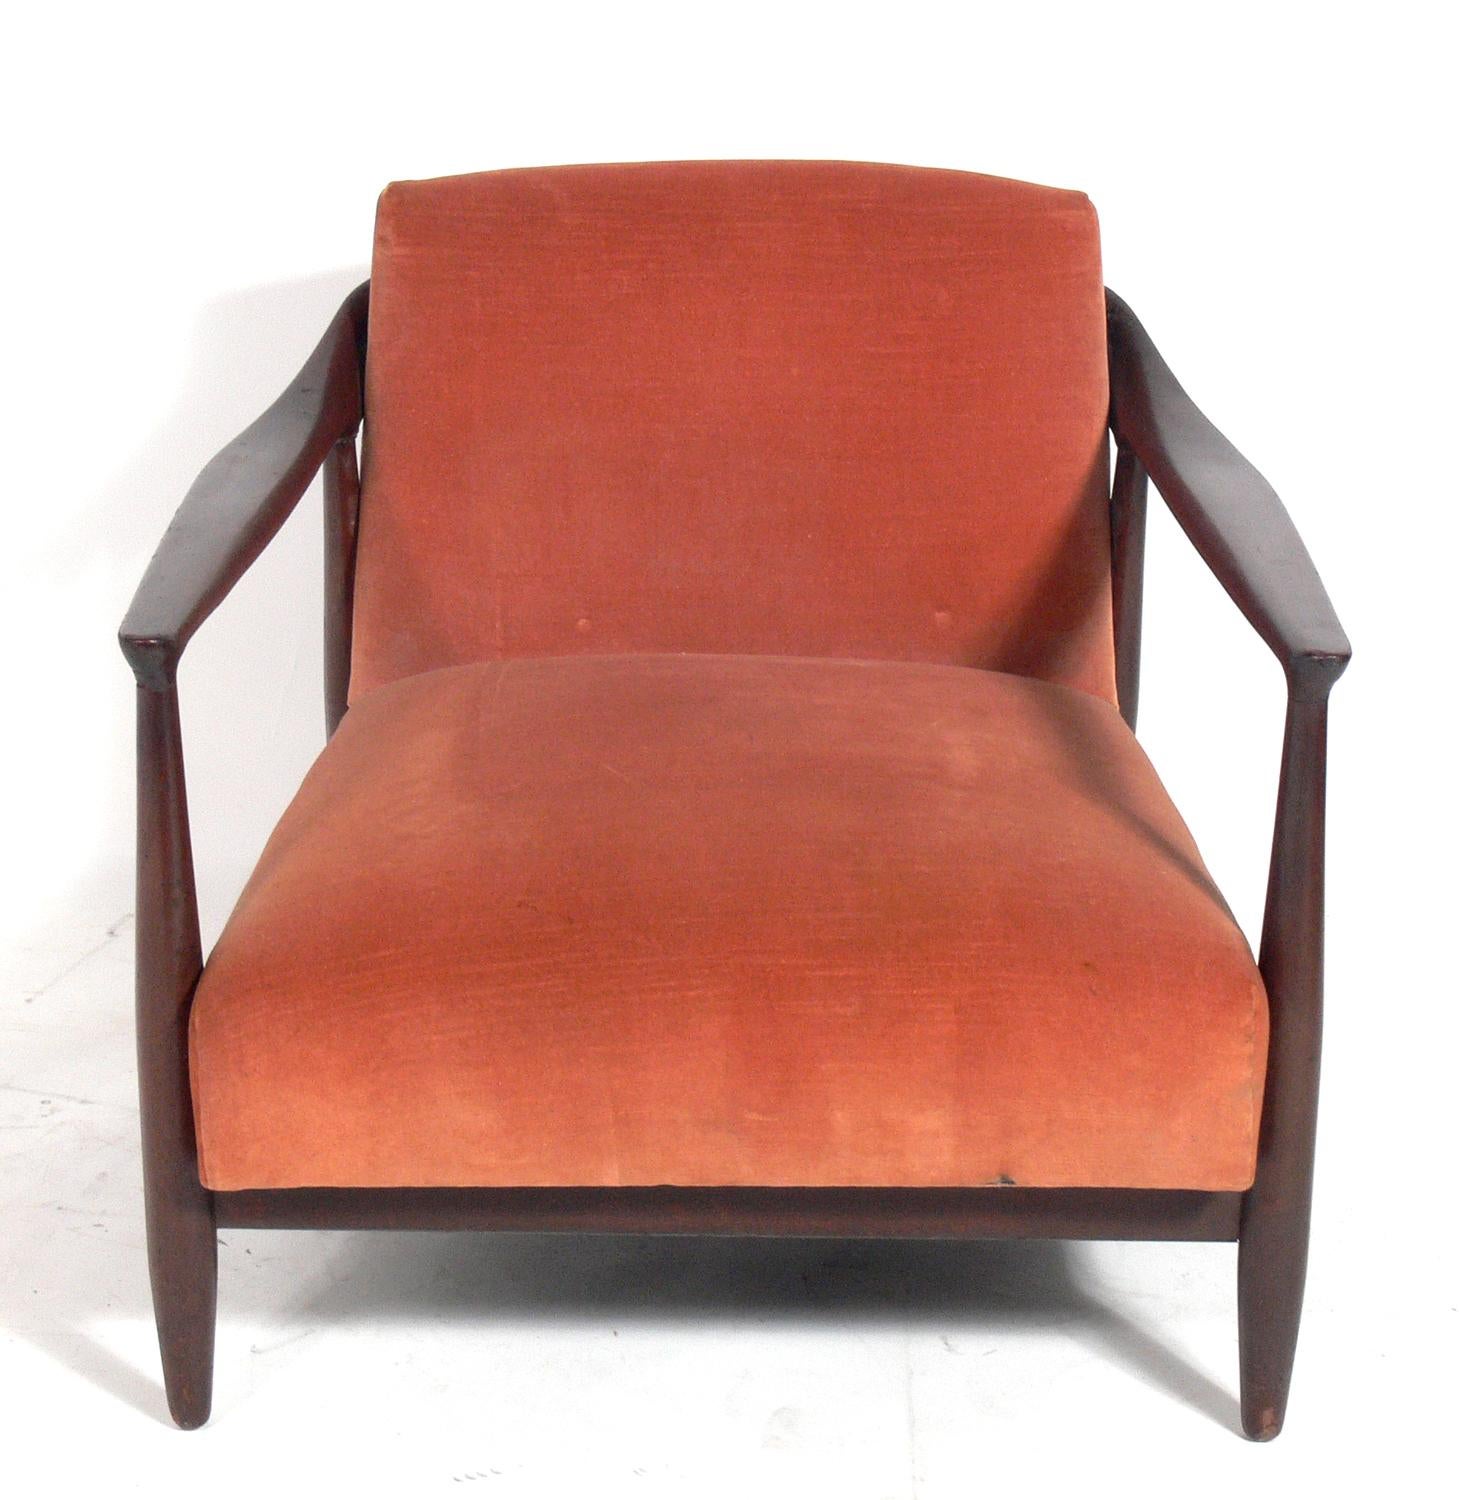 Chaise longue moderne danoise basse d'Ib Kofod-Larsen, Danemark, vers les années 1960. Cette chaise est en train d'être rénovée et retapissée. Le prix indiqué ci-dessous comprend la remise en état et le rembourrage dans votre tissu. Il suffit de